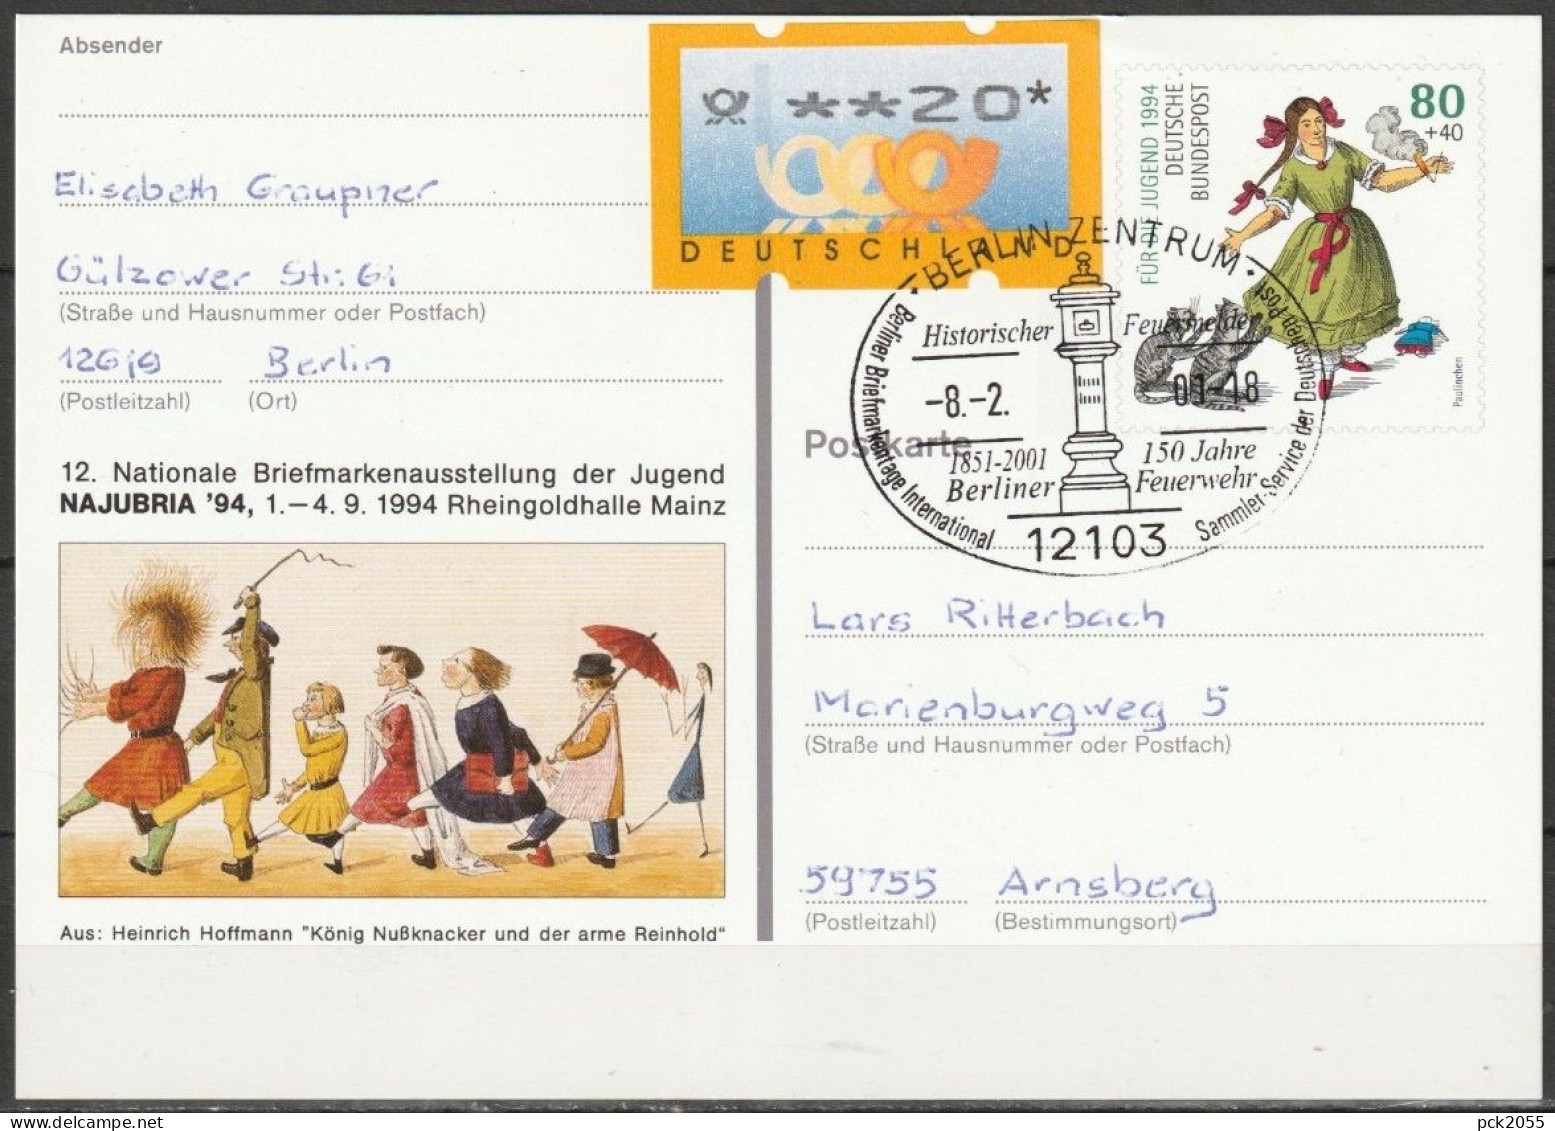 BRD Ganzsache 1994 PSo 34 NAJUBRIA 94 Mainz SST. Berlin Historischer Feuermelder 8.2.2001 (d 3547)günstige Versandkosten - Cartes Postales - Oblitérées